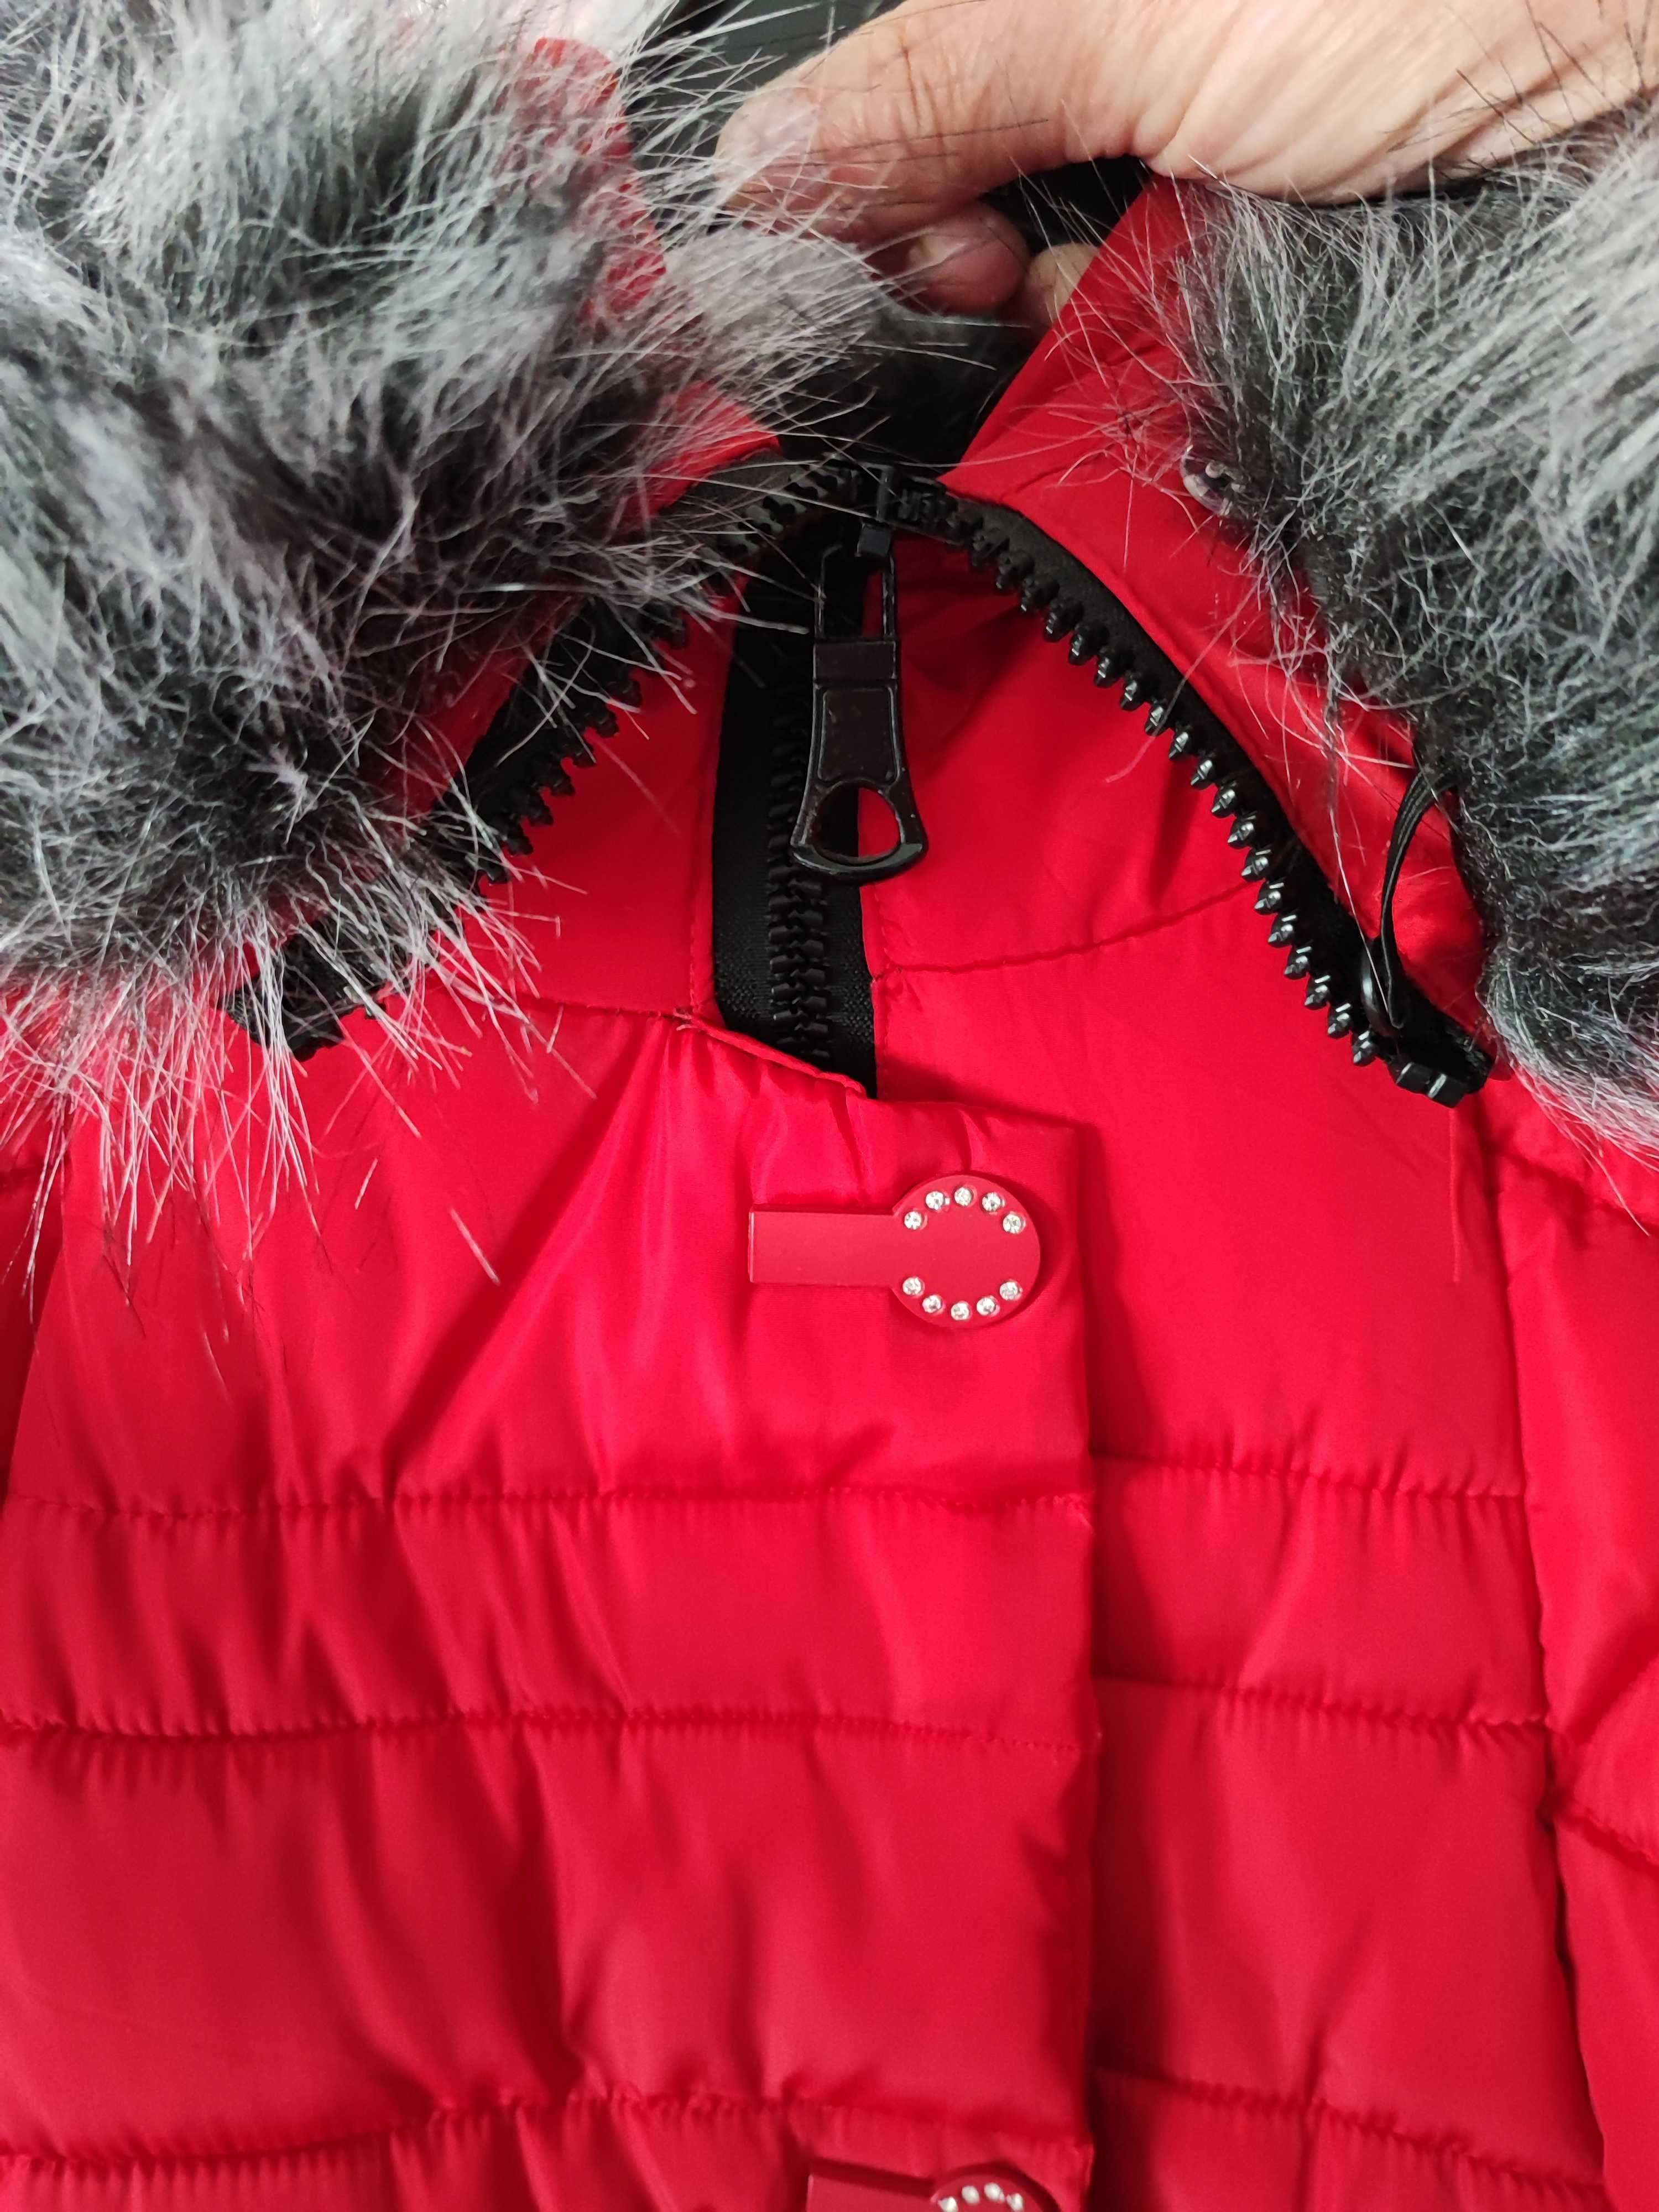 Продам зимнюю курточку красного цвета